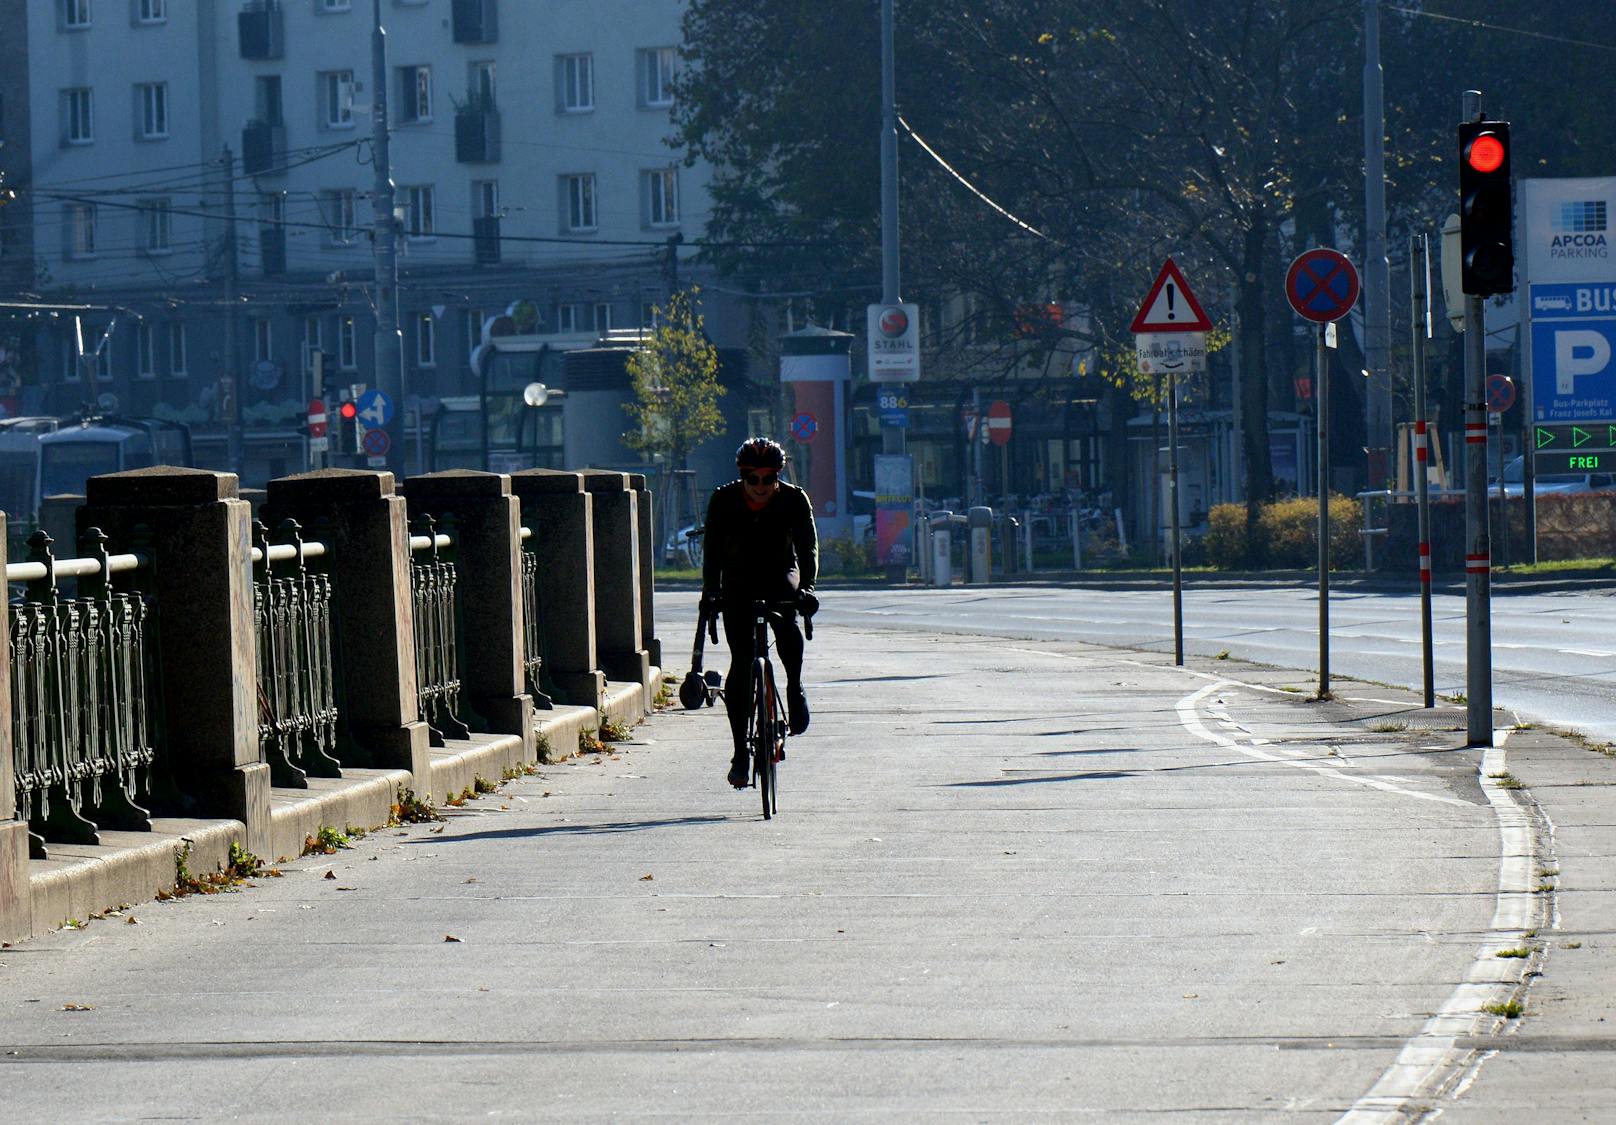 Der Trend zum Radeln in Wien hält an. Durch die Coronakrise wurde das noch weiter beschleunigt, insgesamt ist der Radverkehr in Wien im Vorjahr um 12% gestiegen.